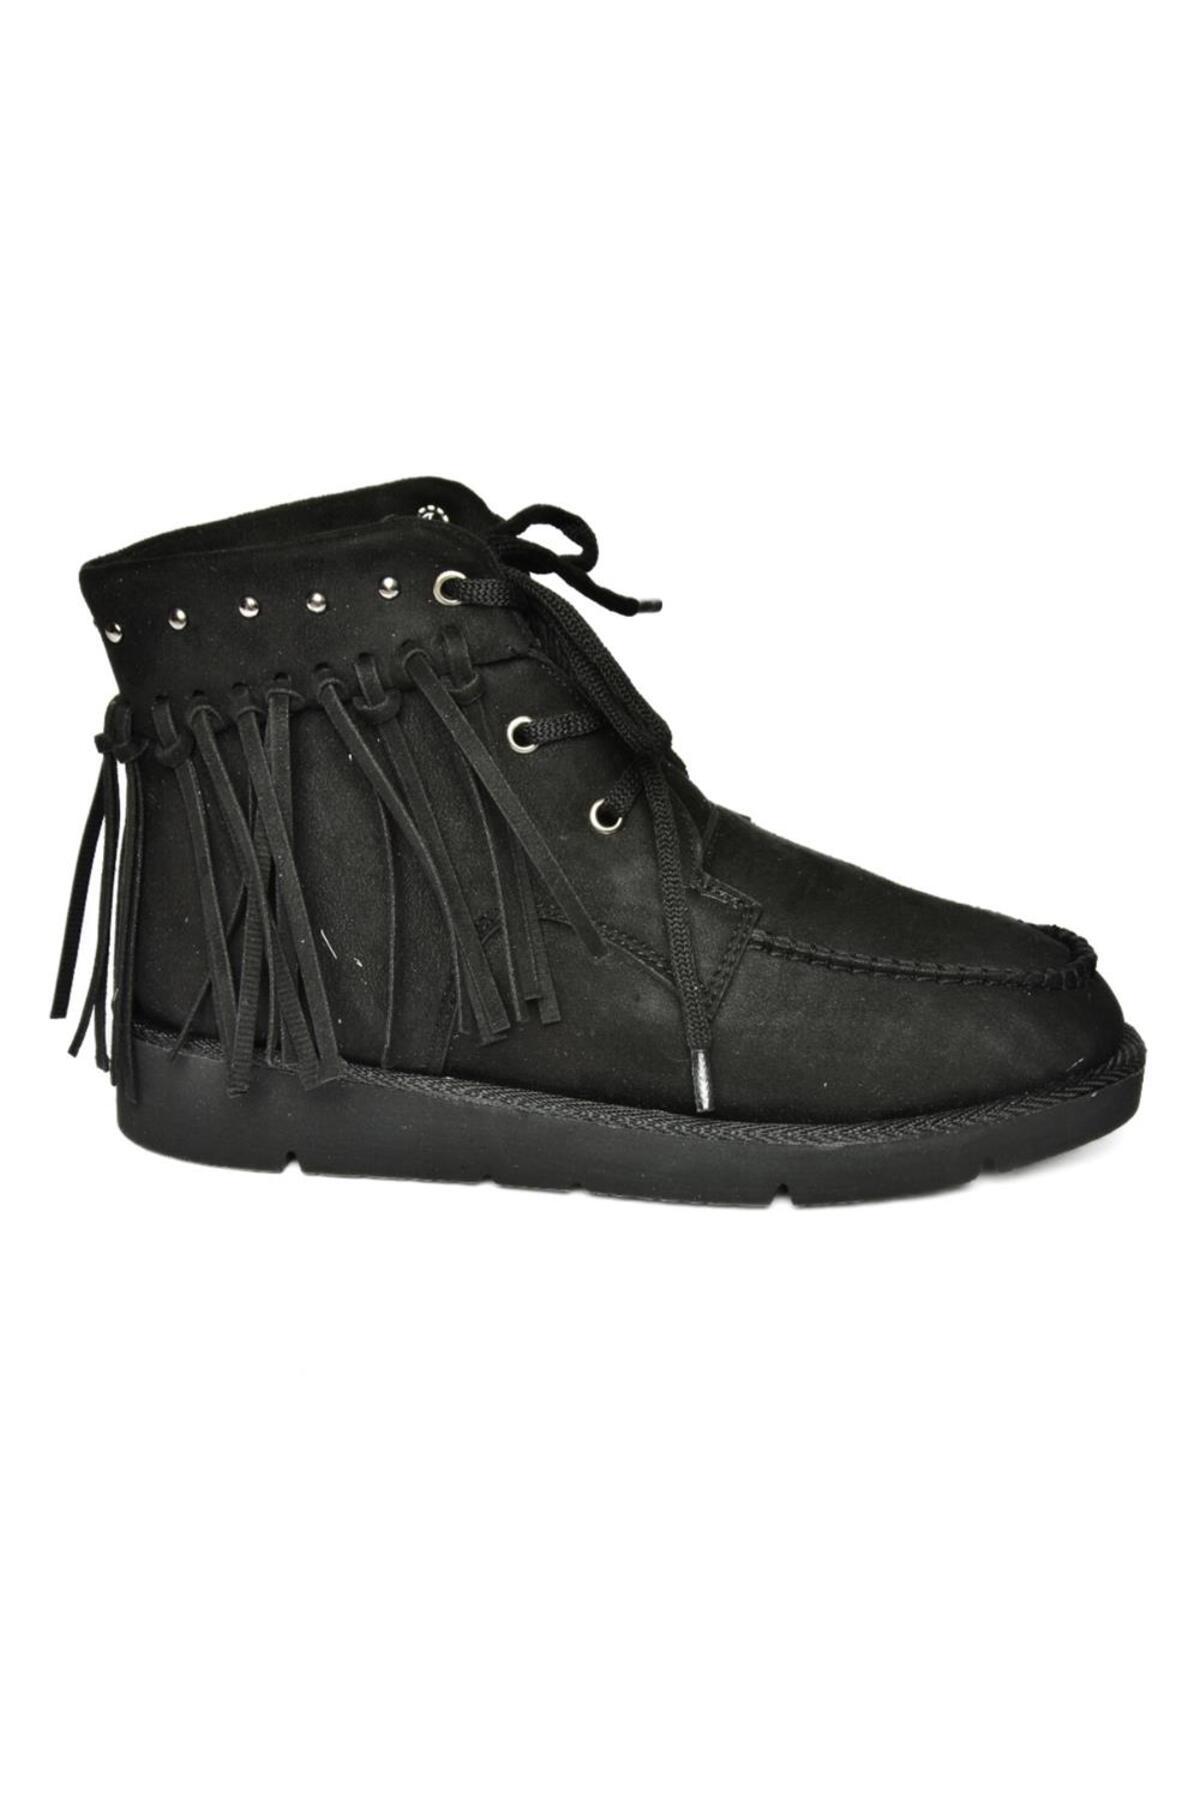 Levně Fox Shoes Women's Black Suede Tasseled Boots